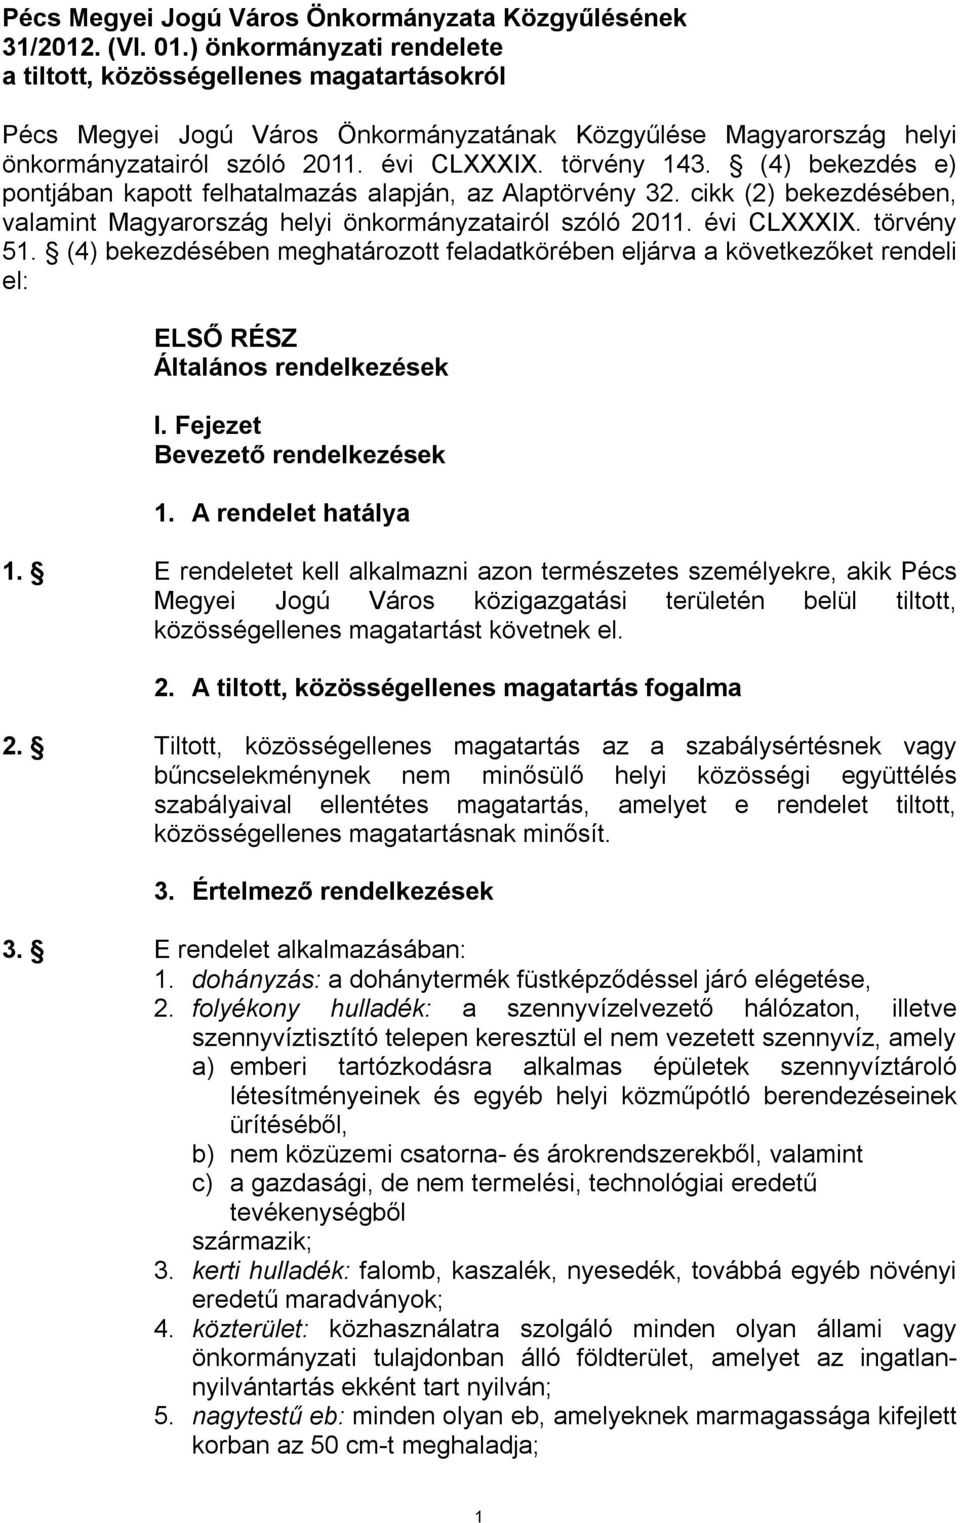 (4) bekezdés e) pontjában kapott felhatalmazás alapján, az Alaptörvény 32. cikk (2) bekezdésében, valamint Magyarország helyi önkormányzatairól szóló 2011. évi CLXXXIX. törvény 51.